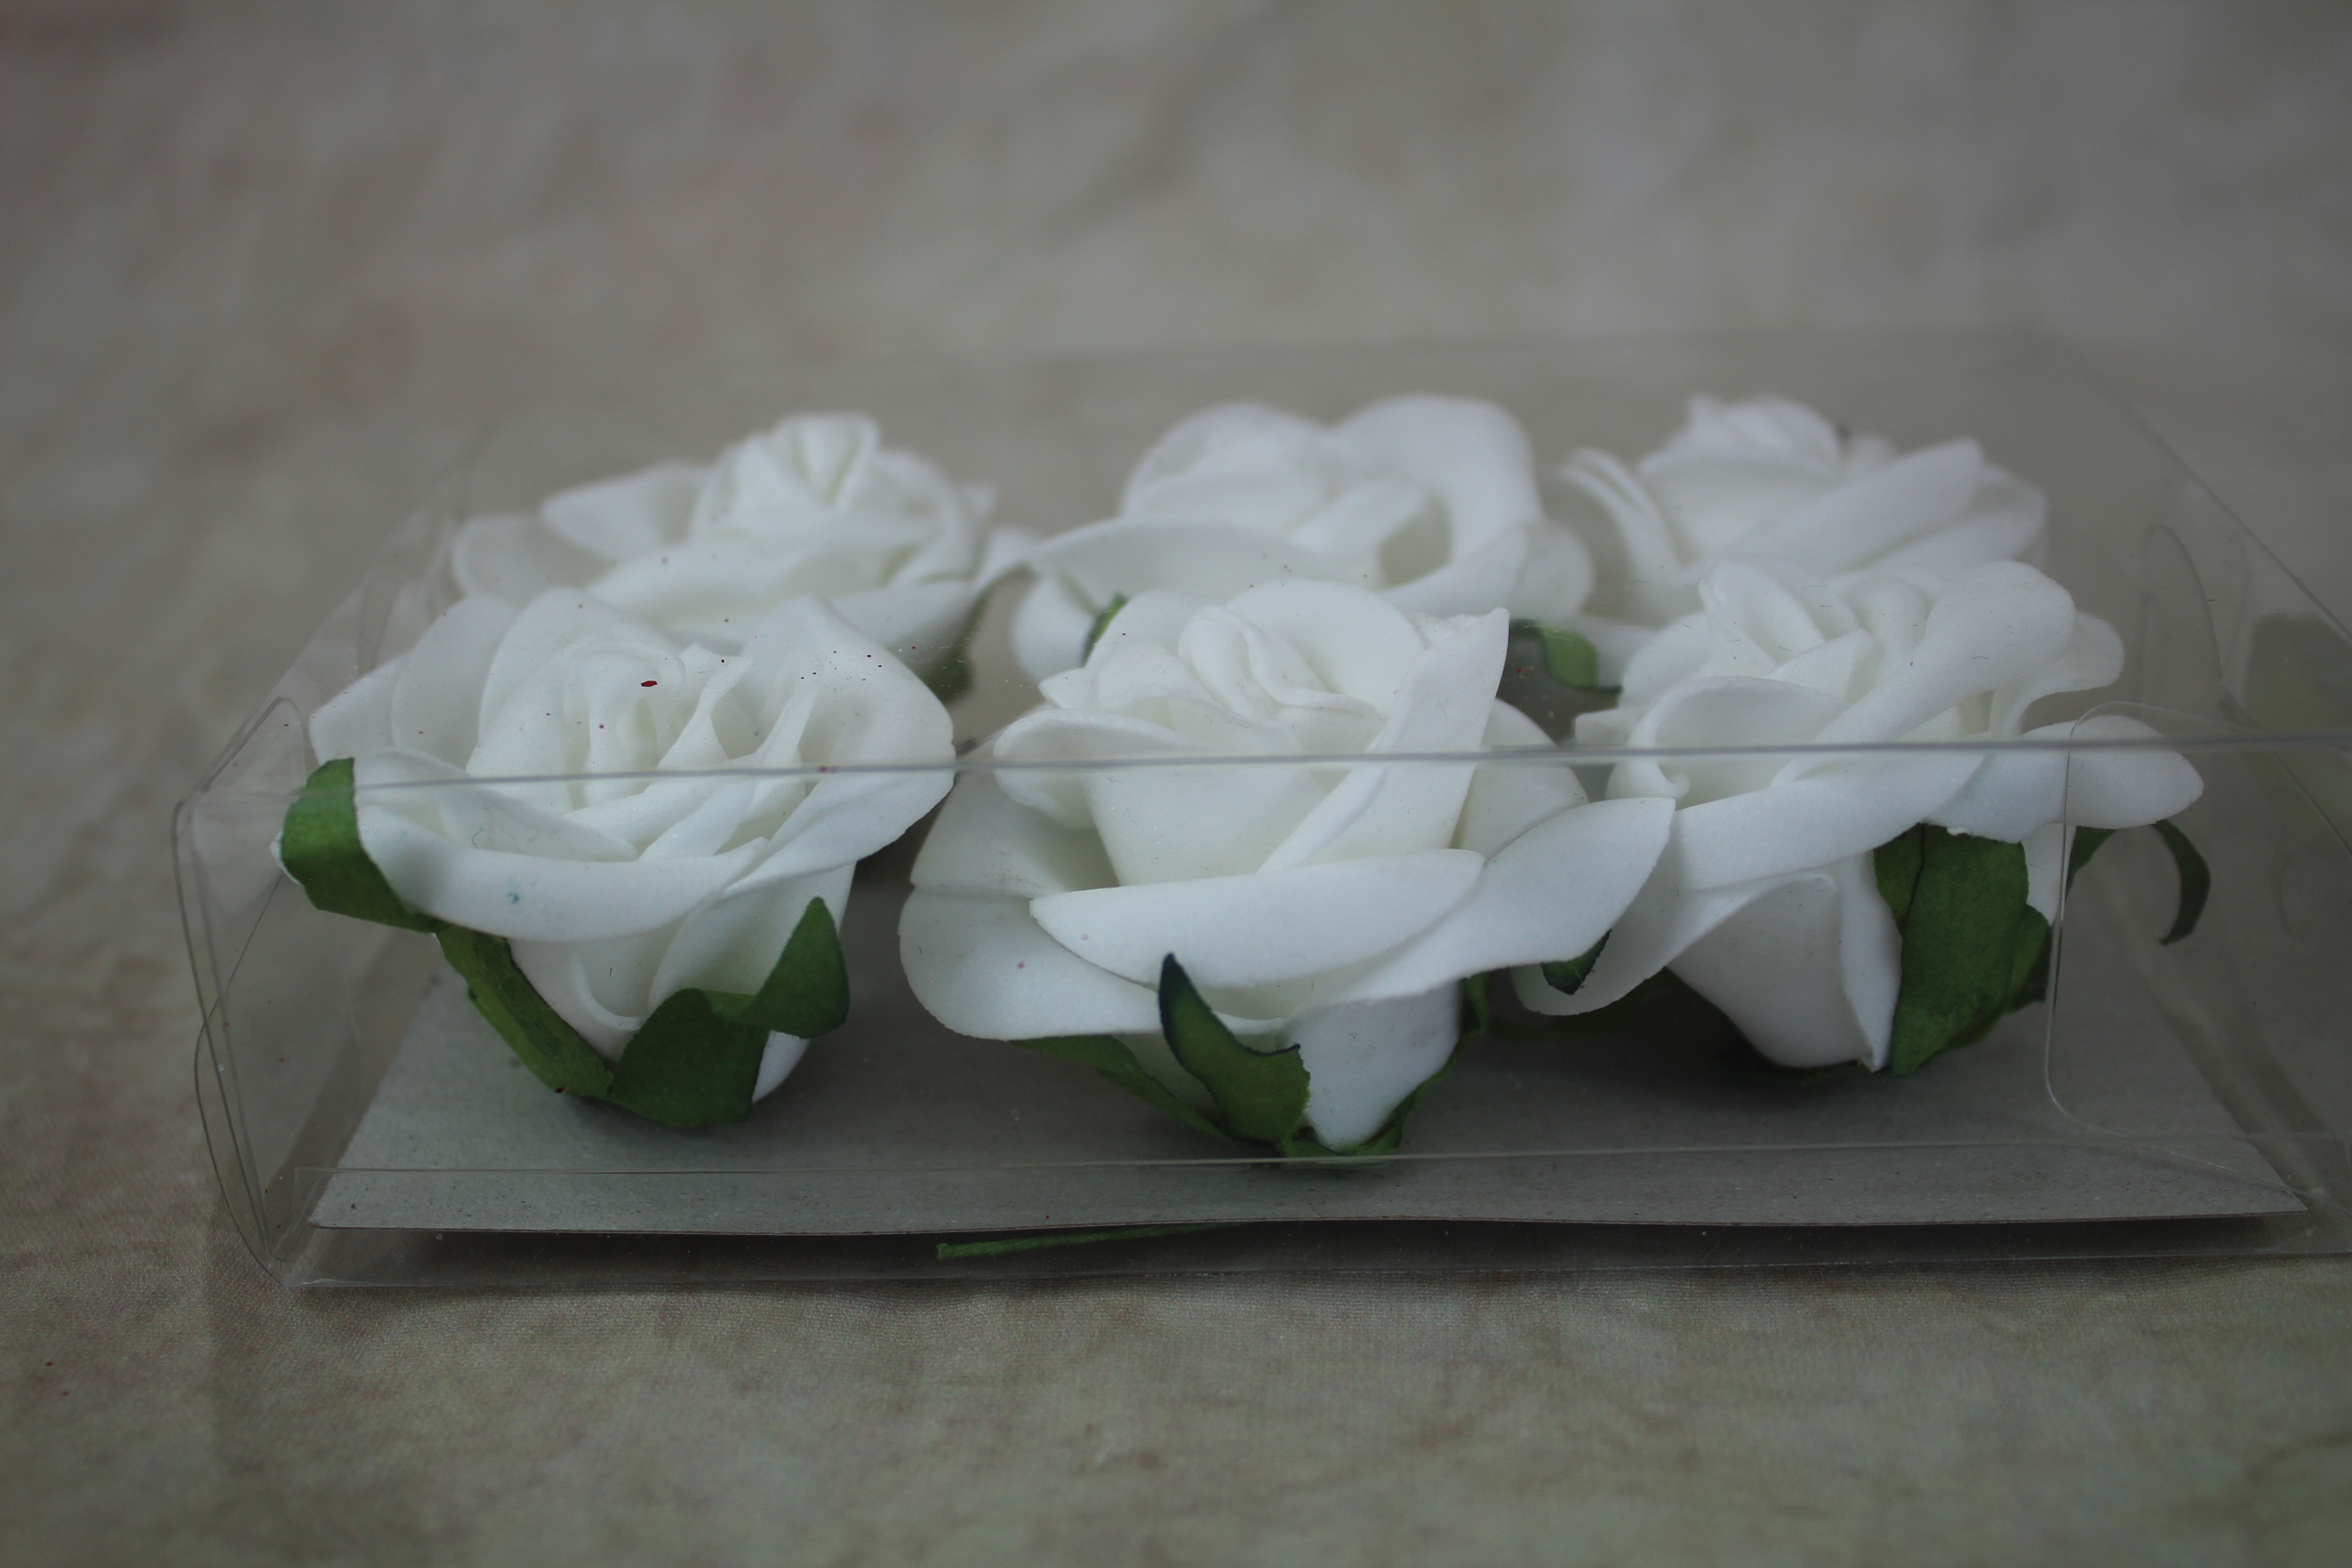 12 x 4cm foam roses on short stems